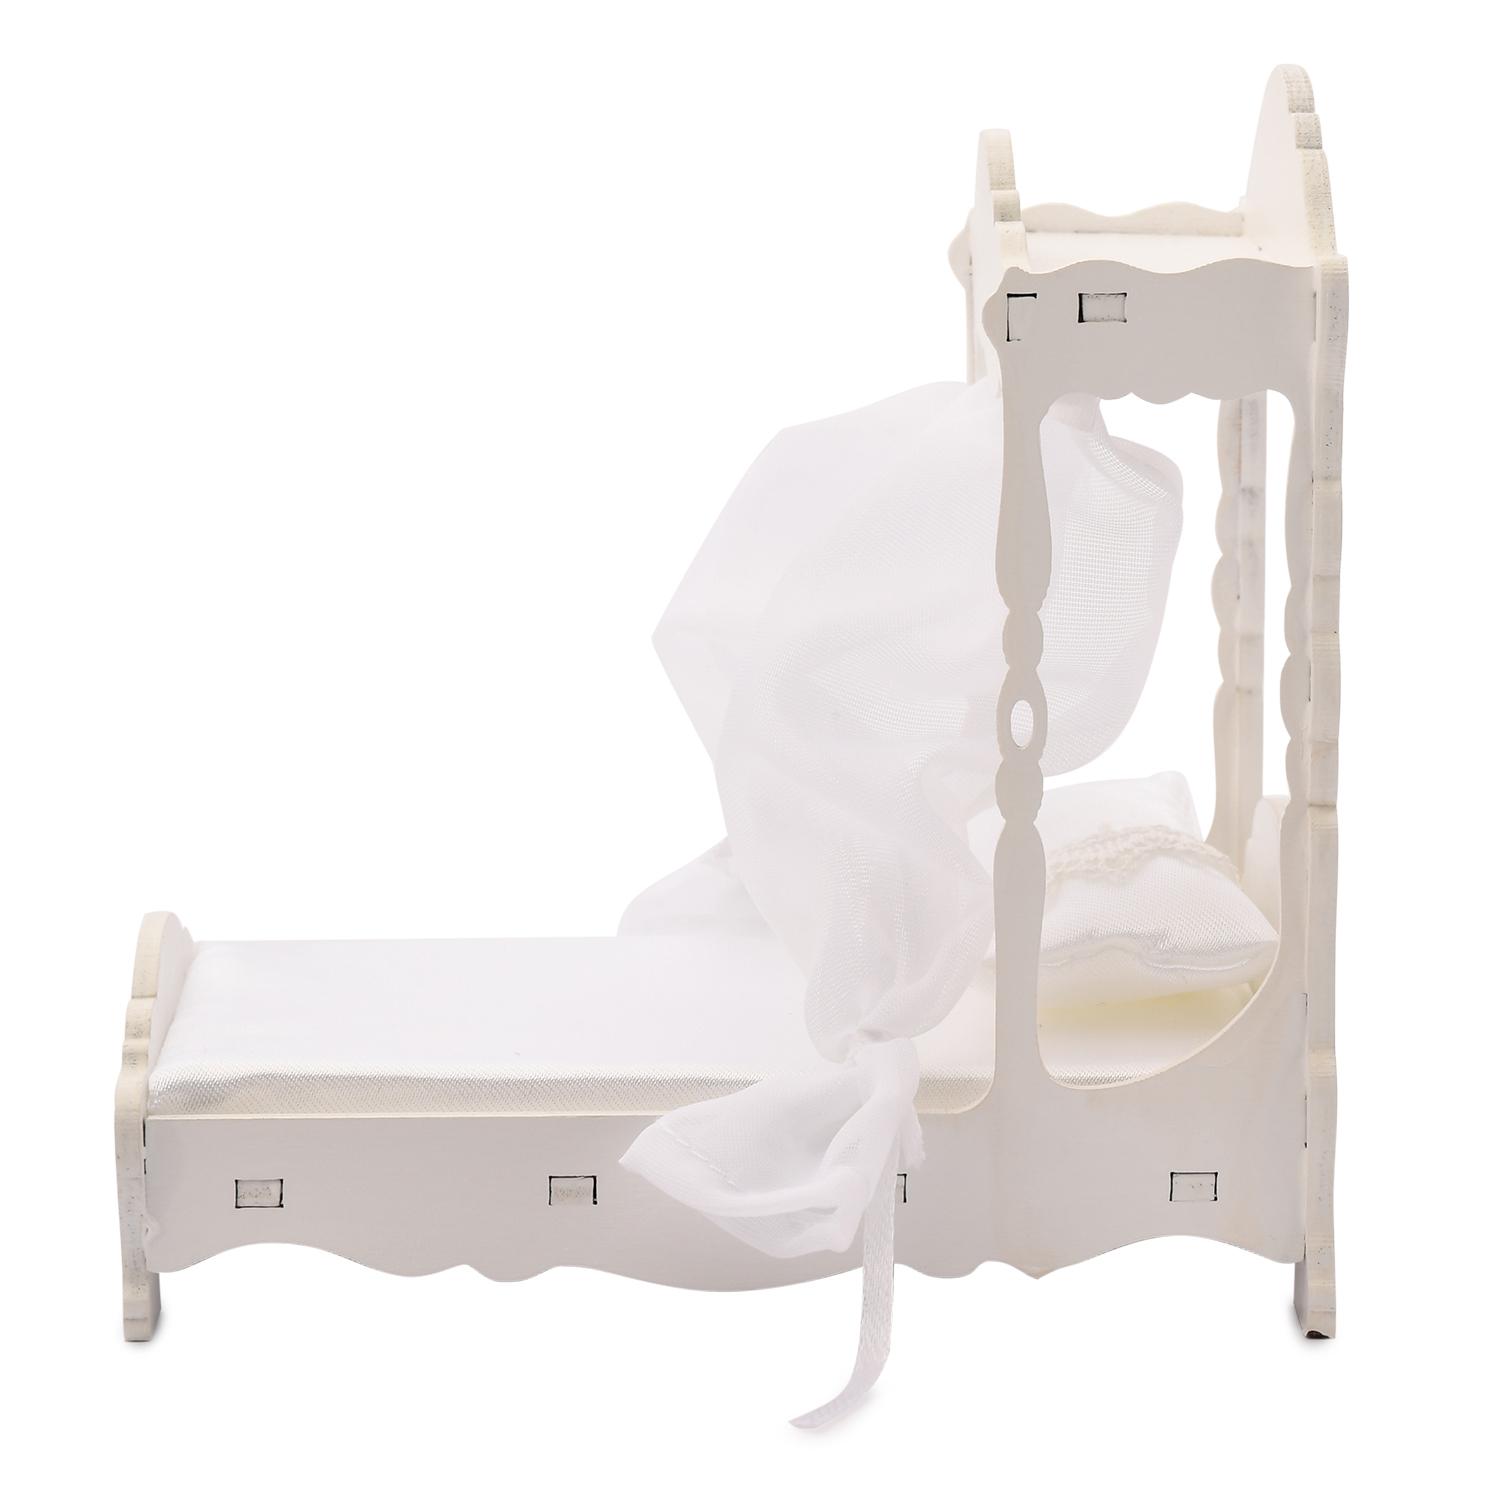 Набор - Большая кровать с балдахином, матрасом и подушкой, коллекция Прованс  